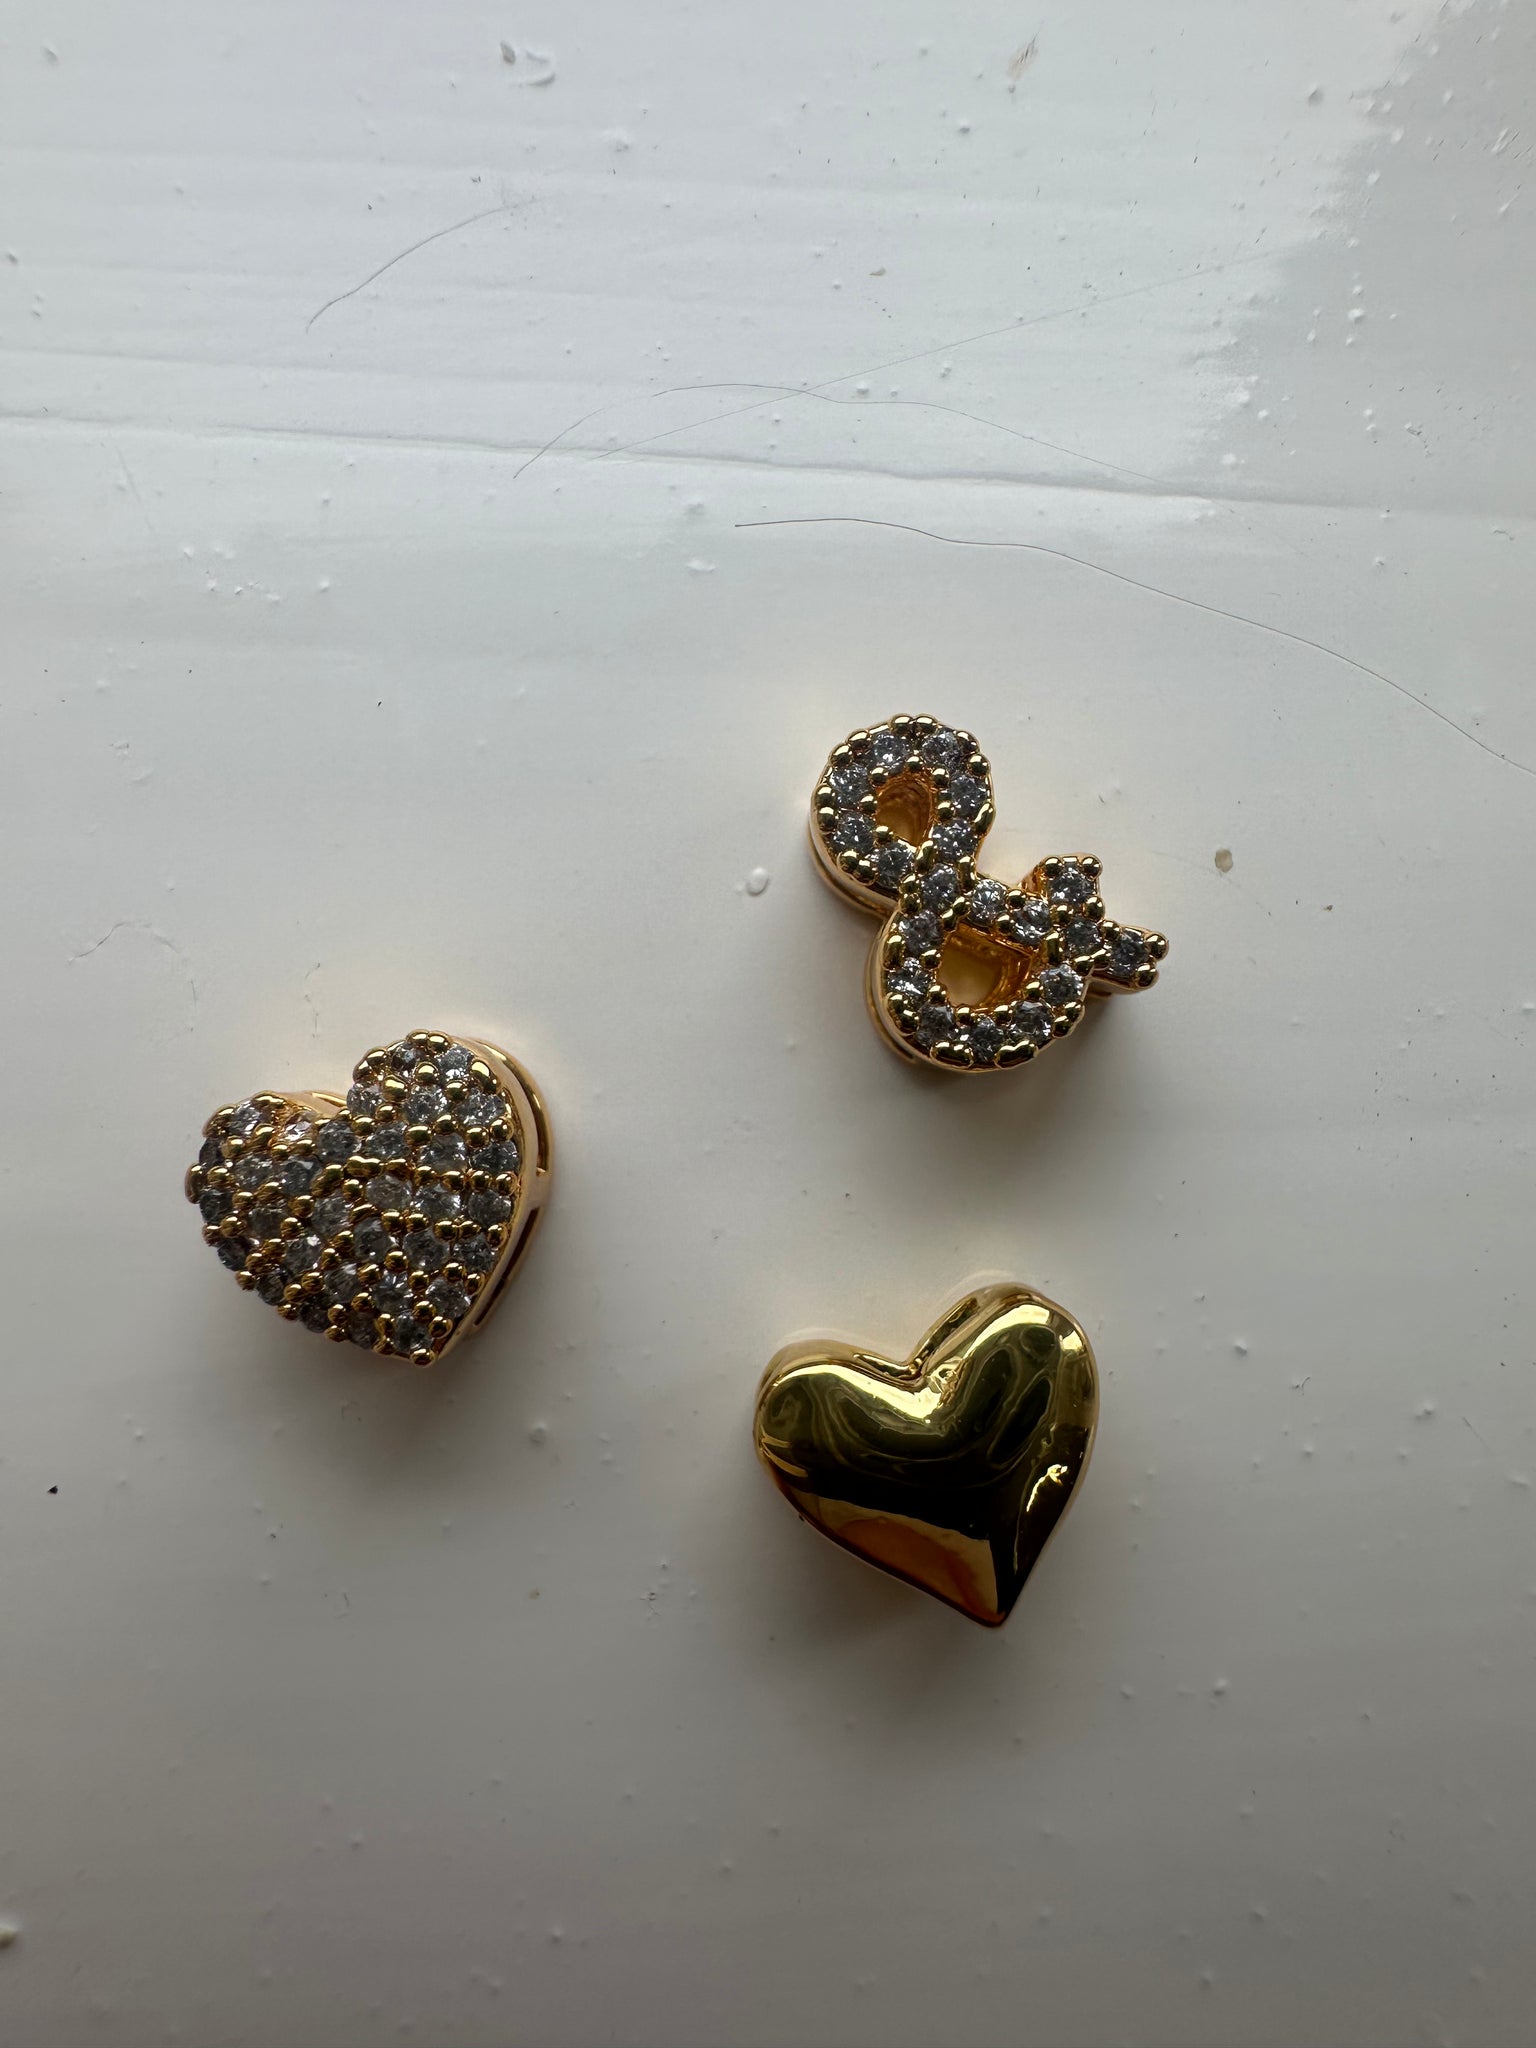 Mini Double Bubble Necklace with diamanté heart